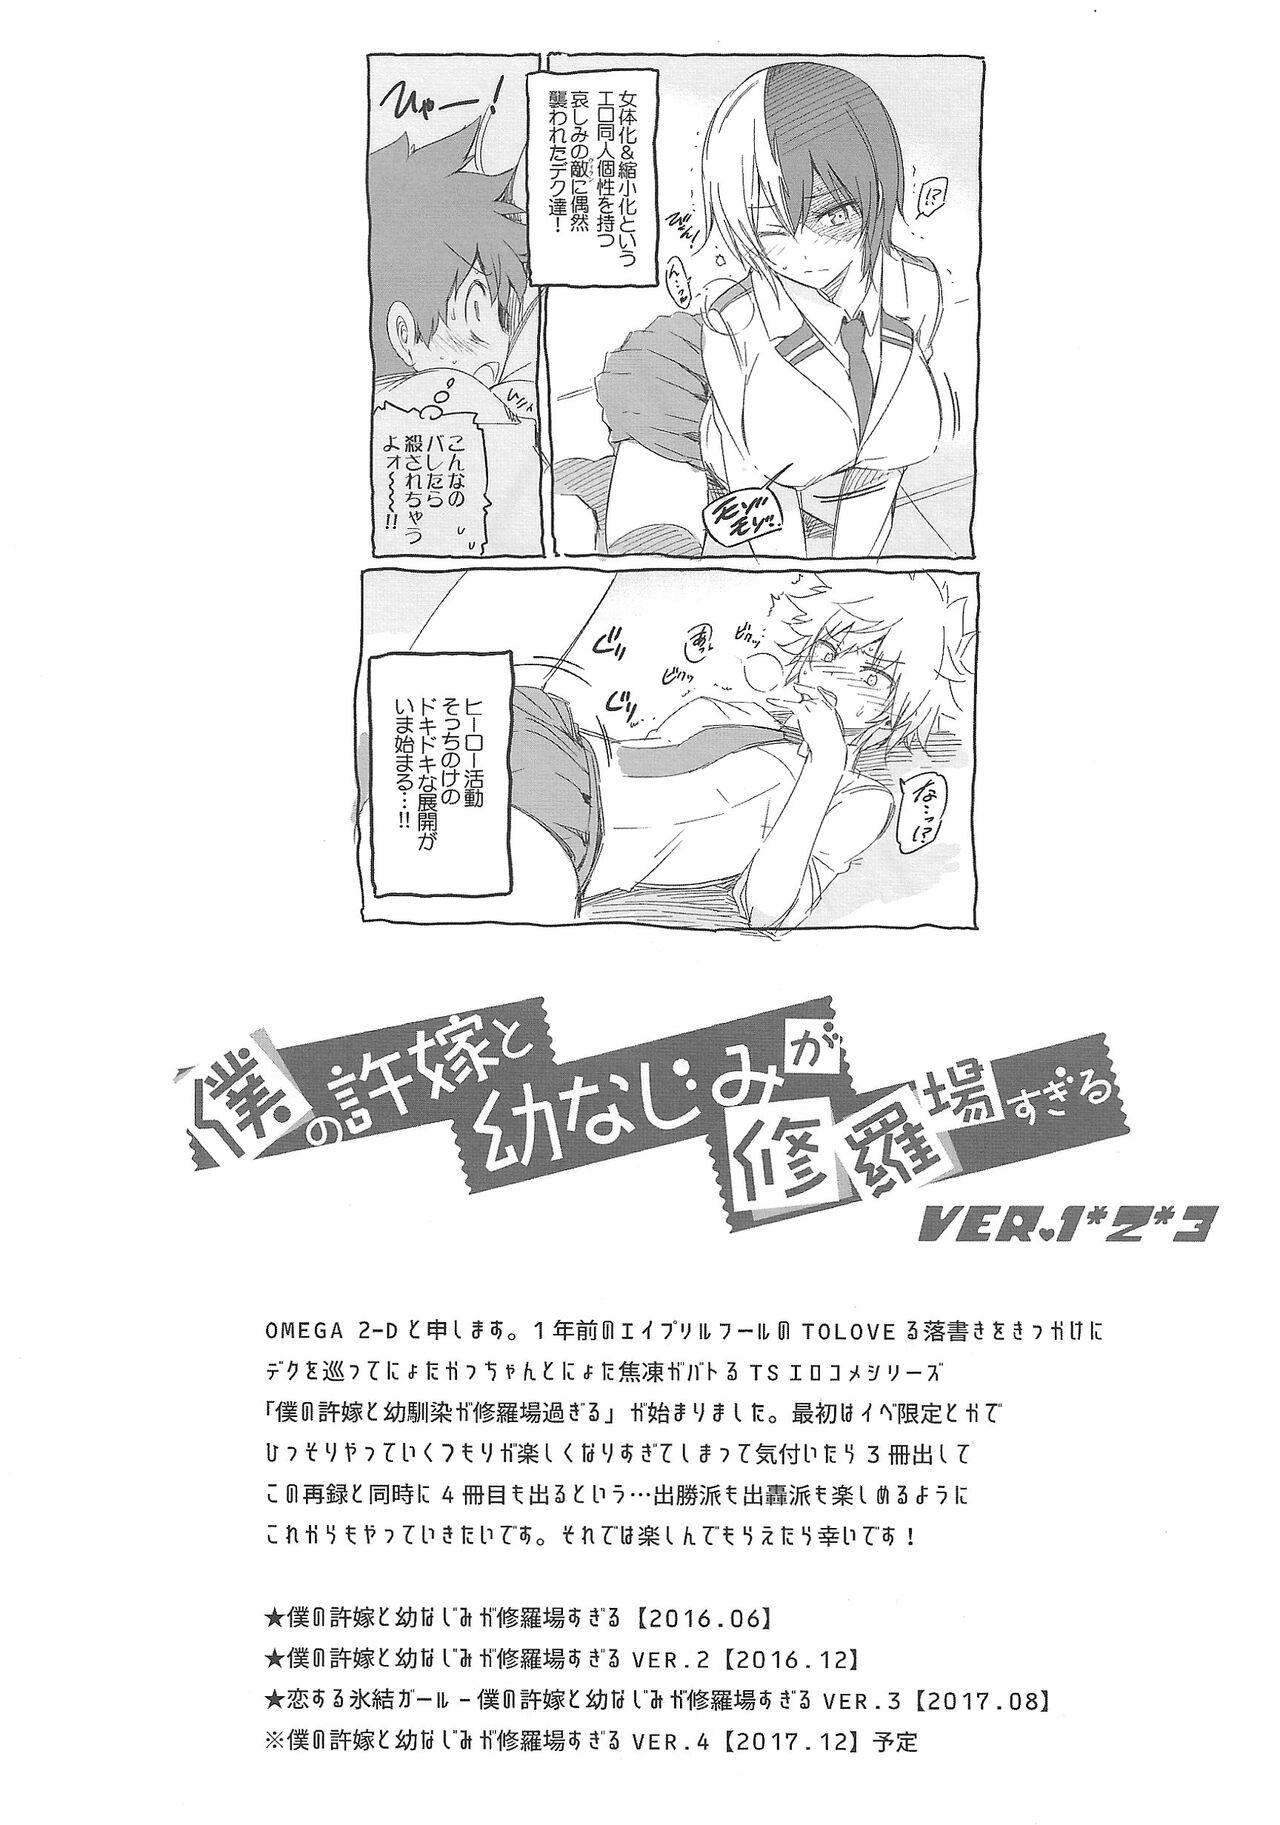 Bikini Boku no Iinazuke to Osananajimi ga Shuraba Sugiru Volume 1, 2 & 3 - My hero academia | boku no hero academia Chibola - Page 3